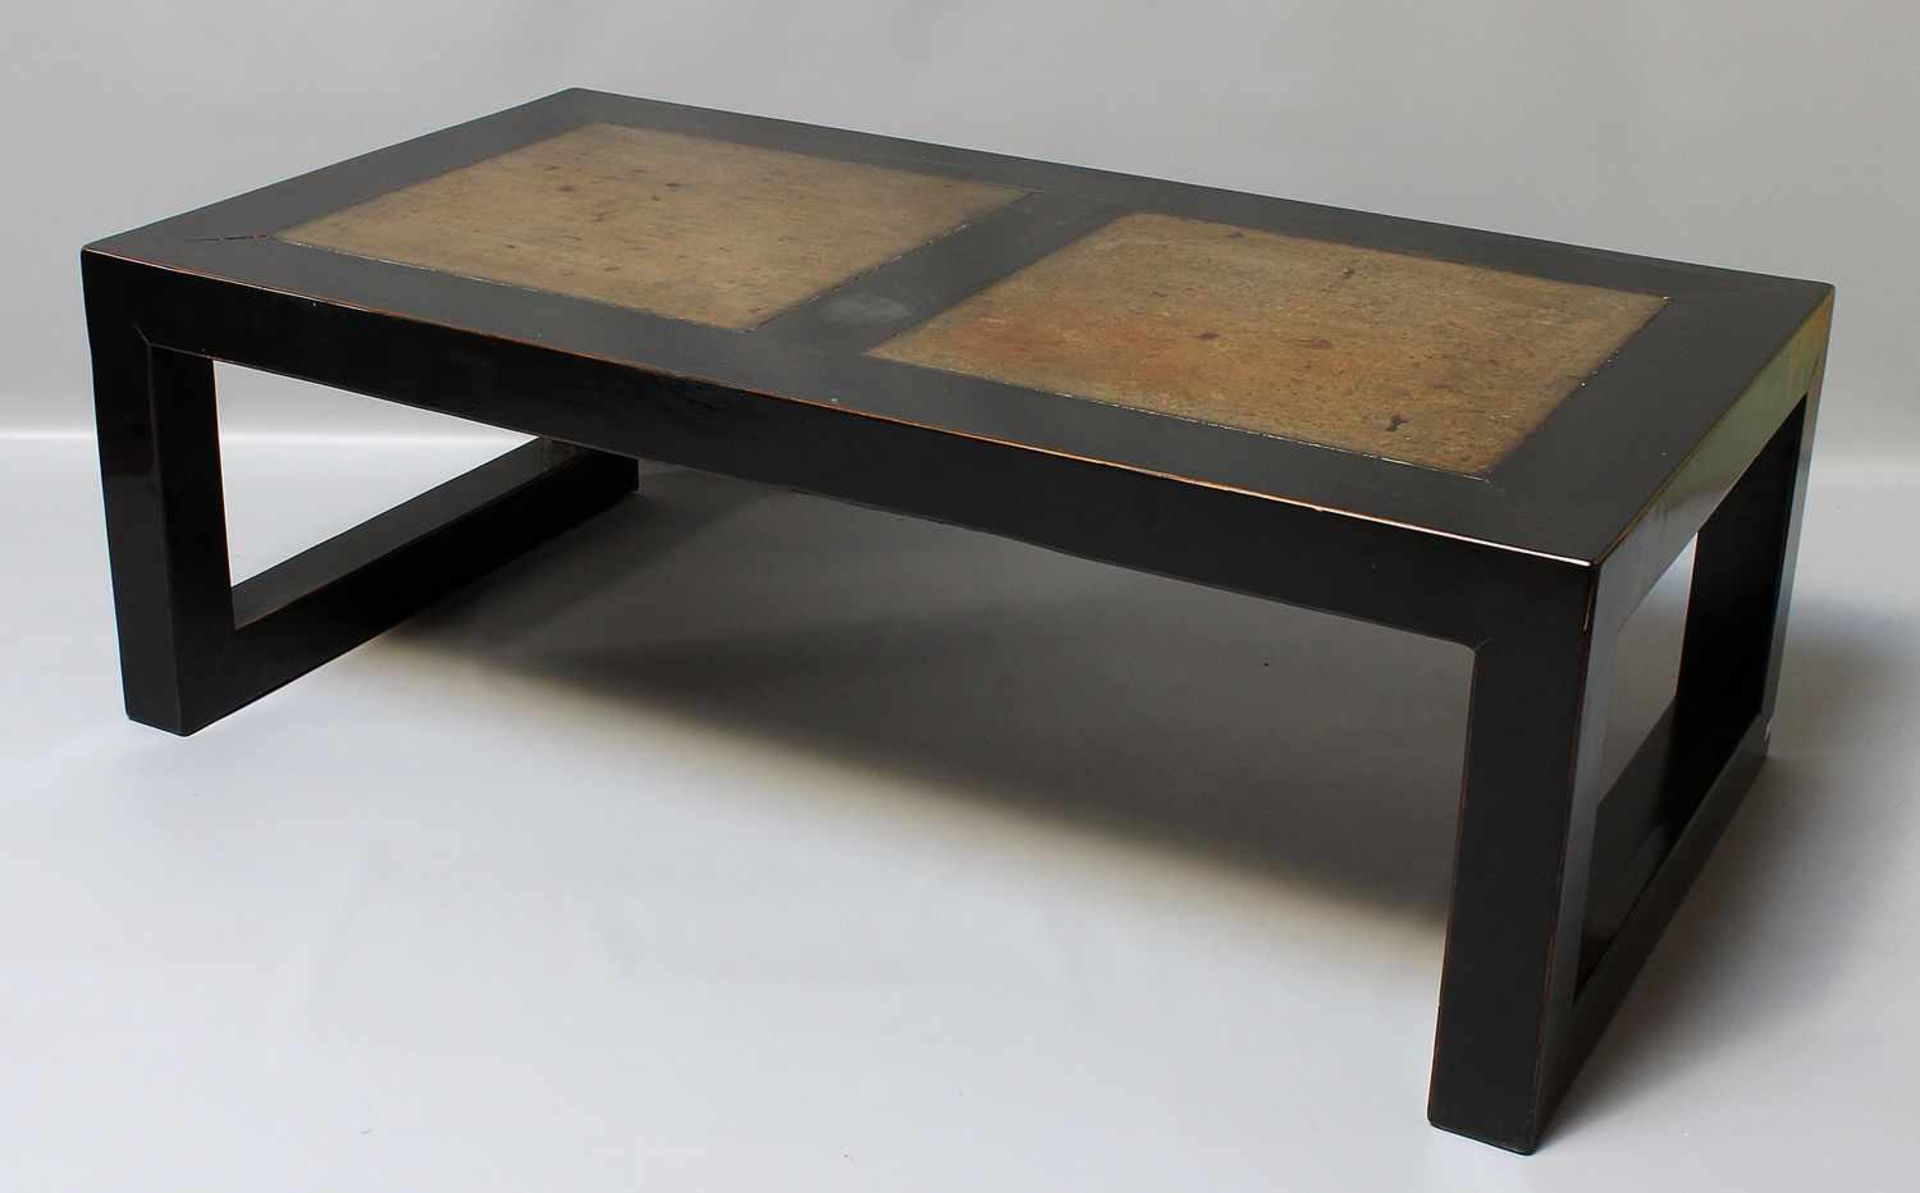 Asiatischer Couchtisch.So genannter "long low table". Holz, schwarz gefasst, Tischplatte mit zwei